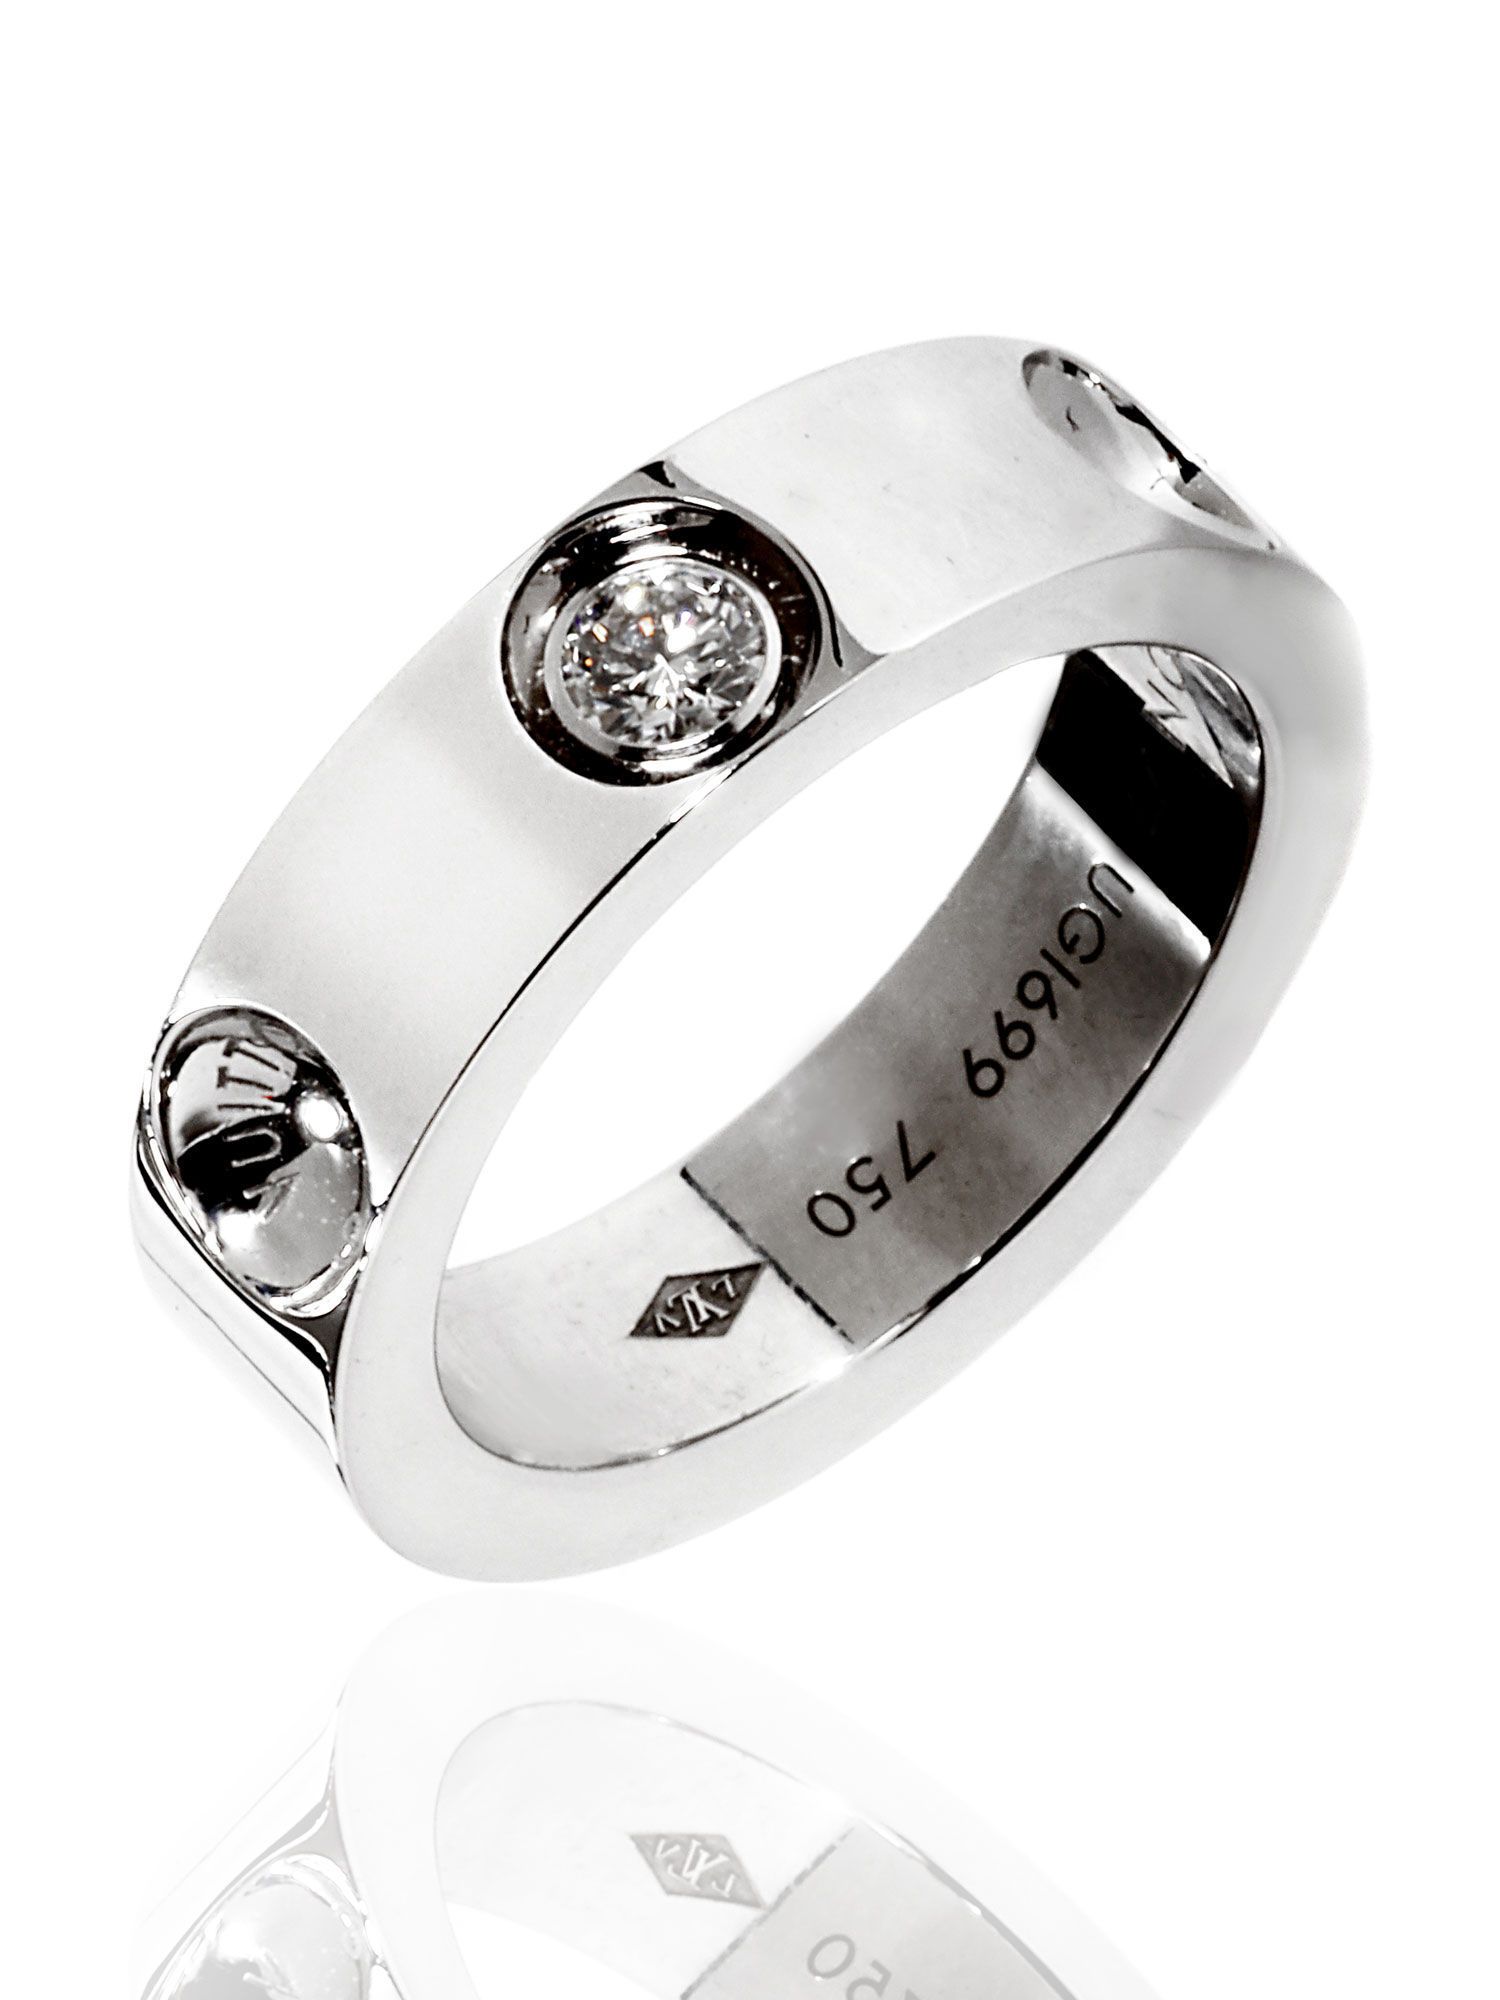 Louis Vuitton® Empreinte Ring, White Gold And Diamonds